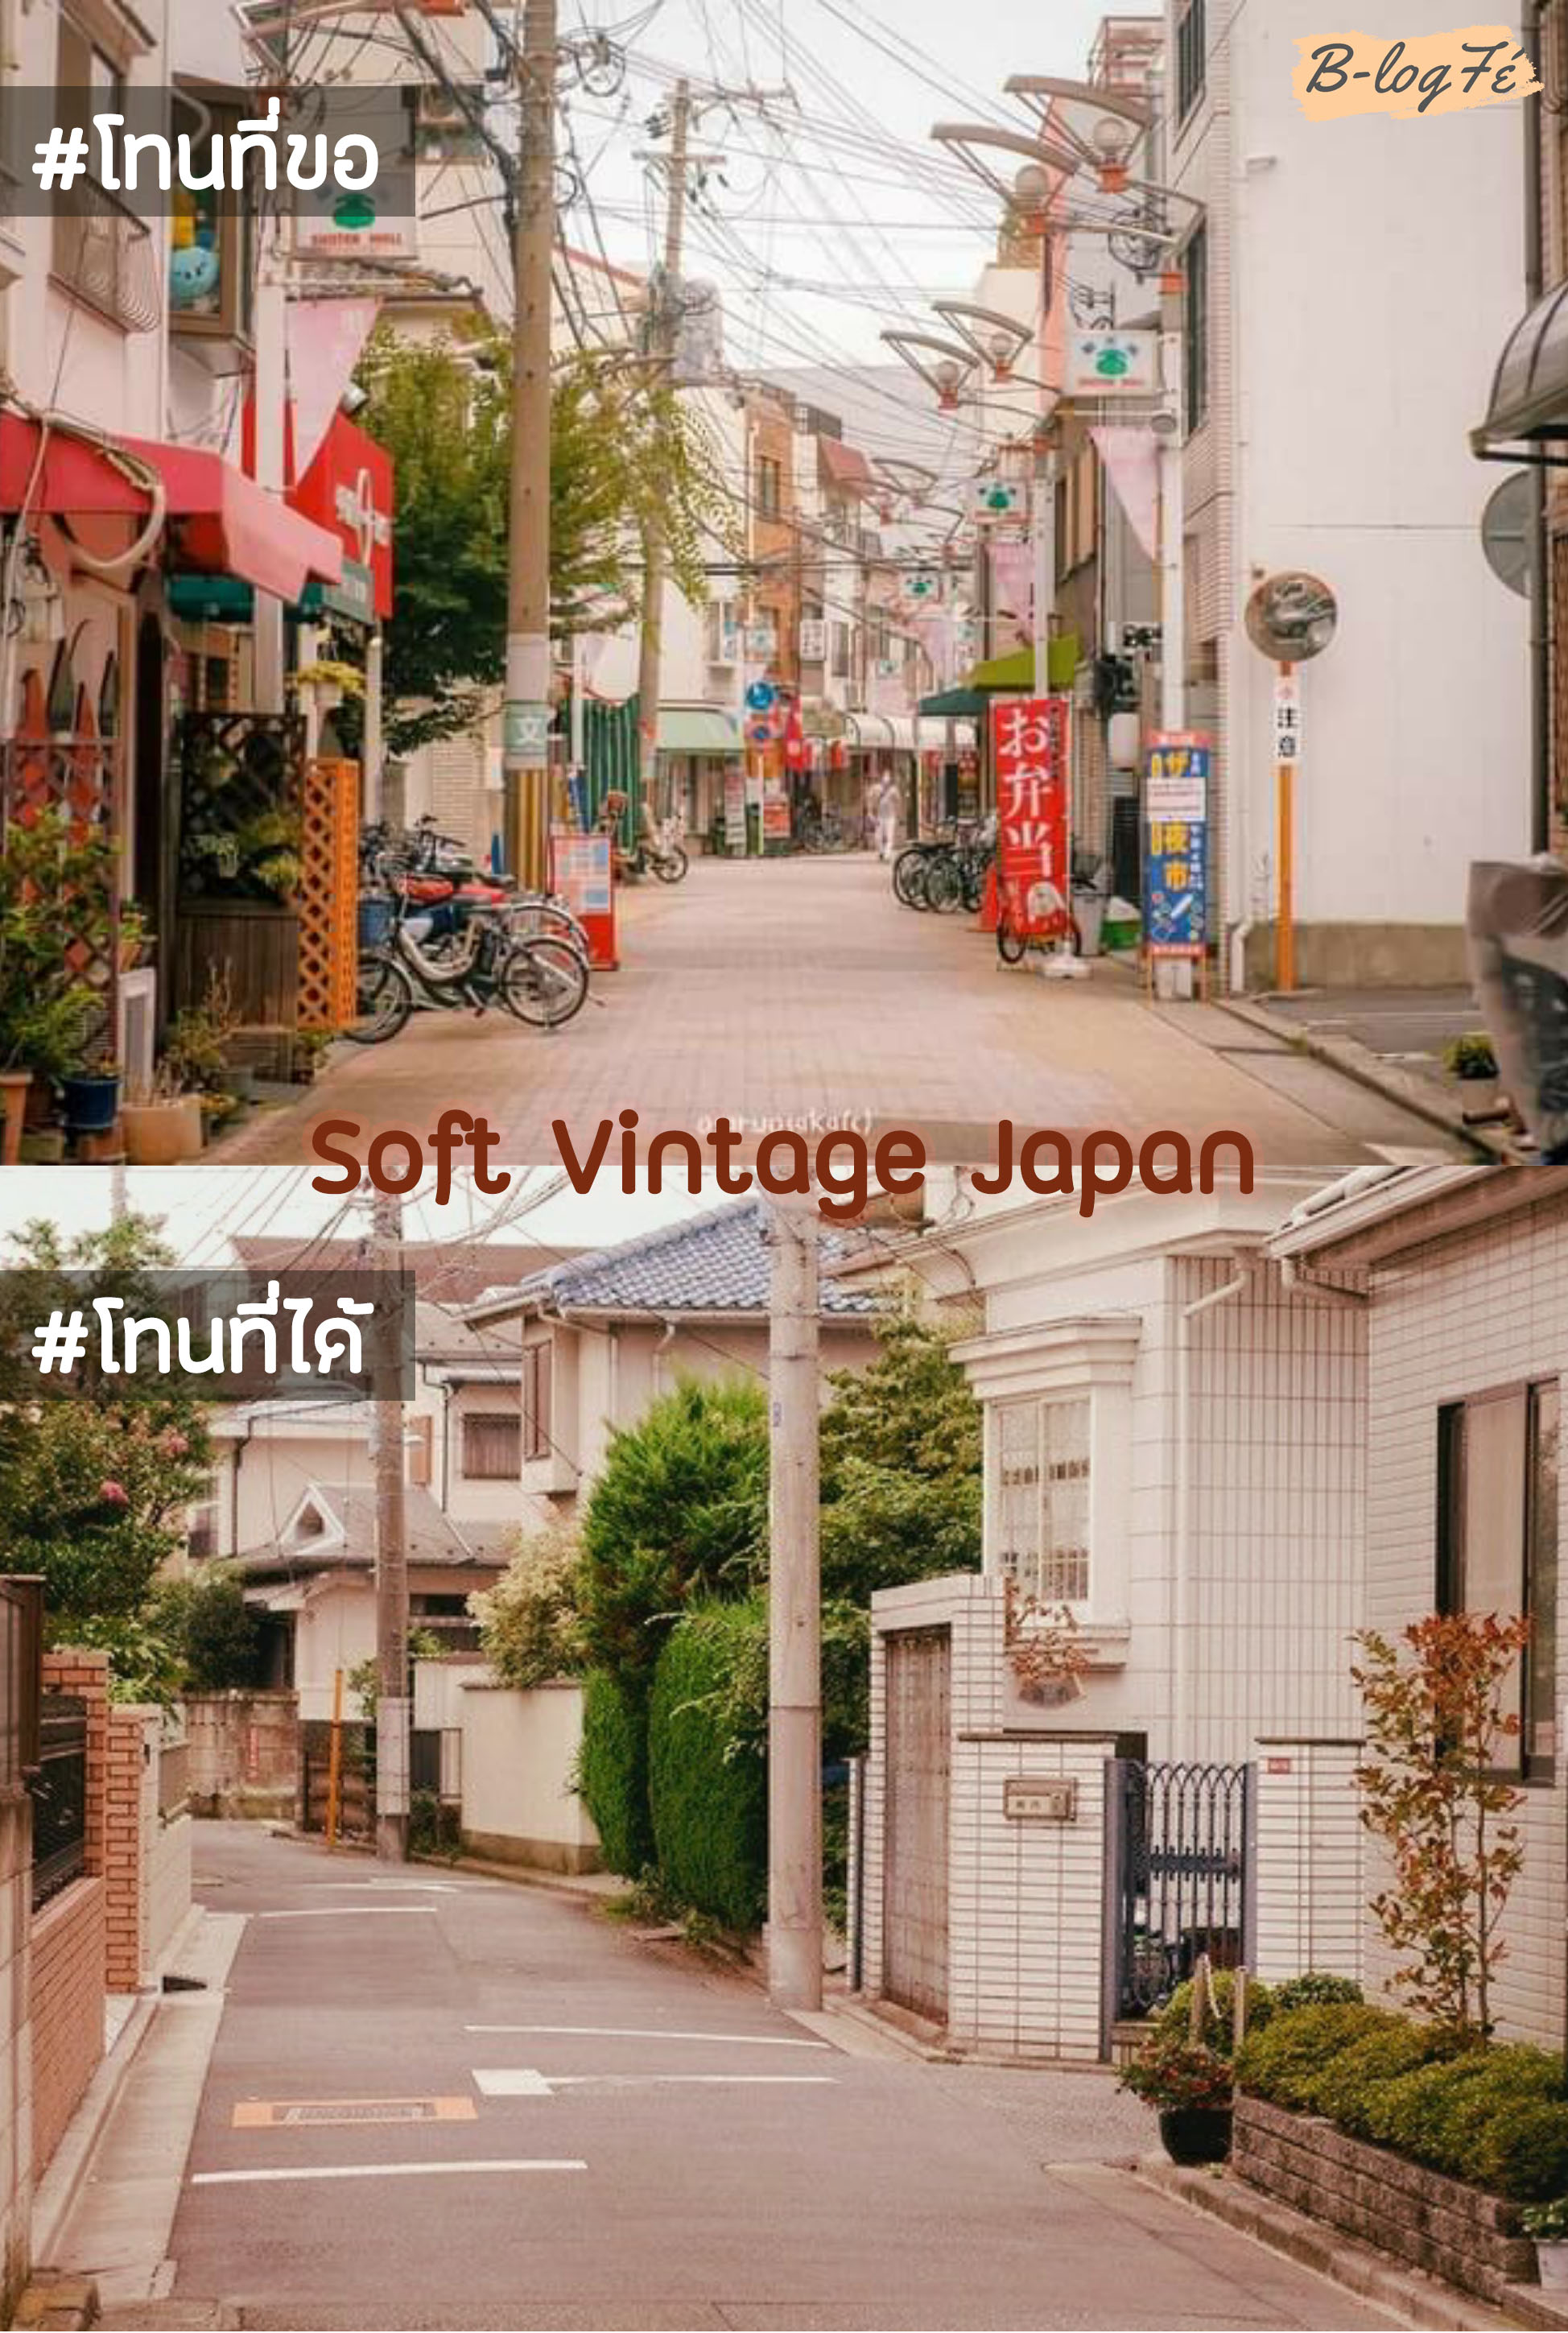 แต่งรูปโทนญี่ปุ่น ซอฟต์วินเทจ soft vintage snapseed